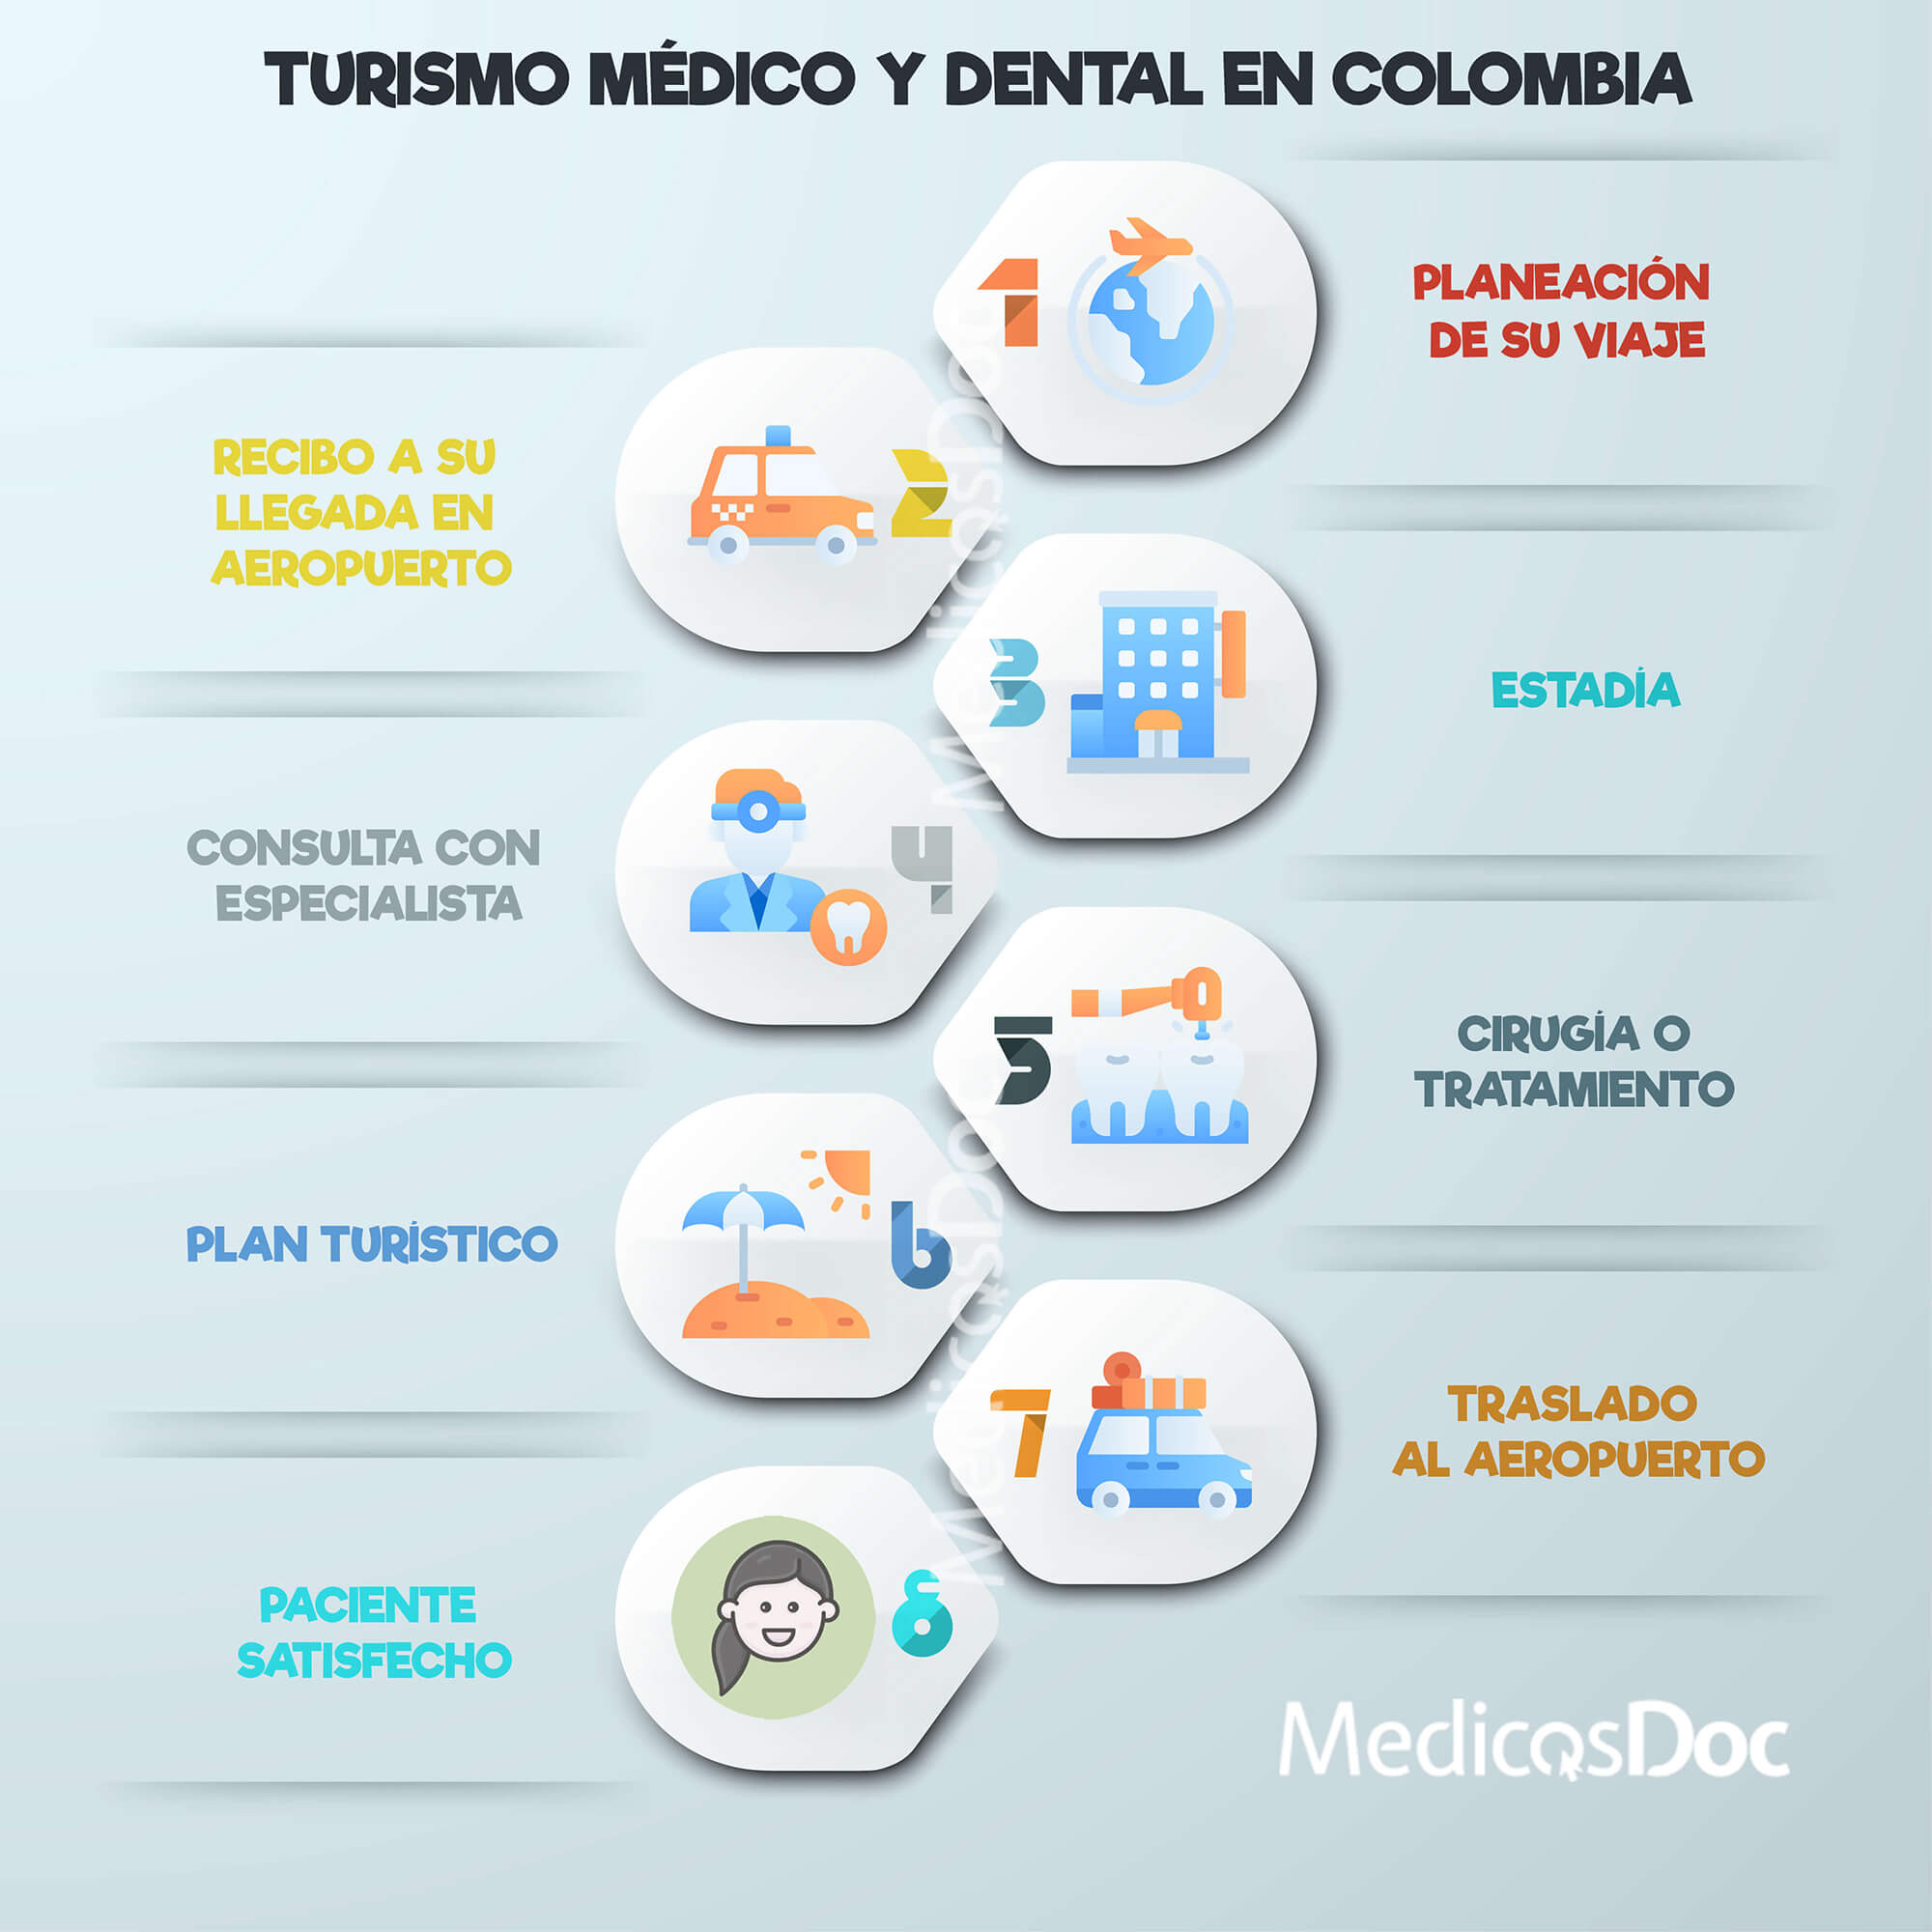 Turismo medico y dental colombia